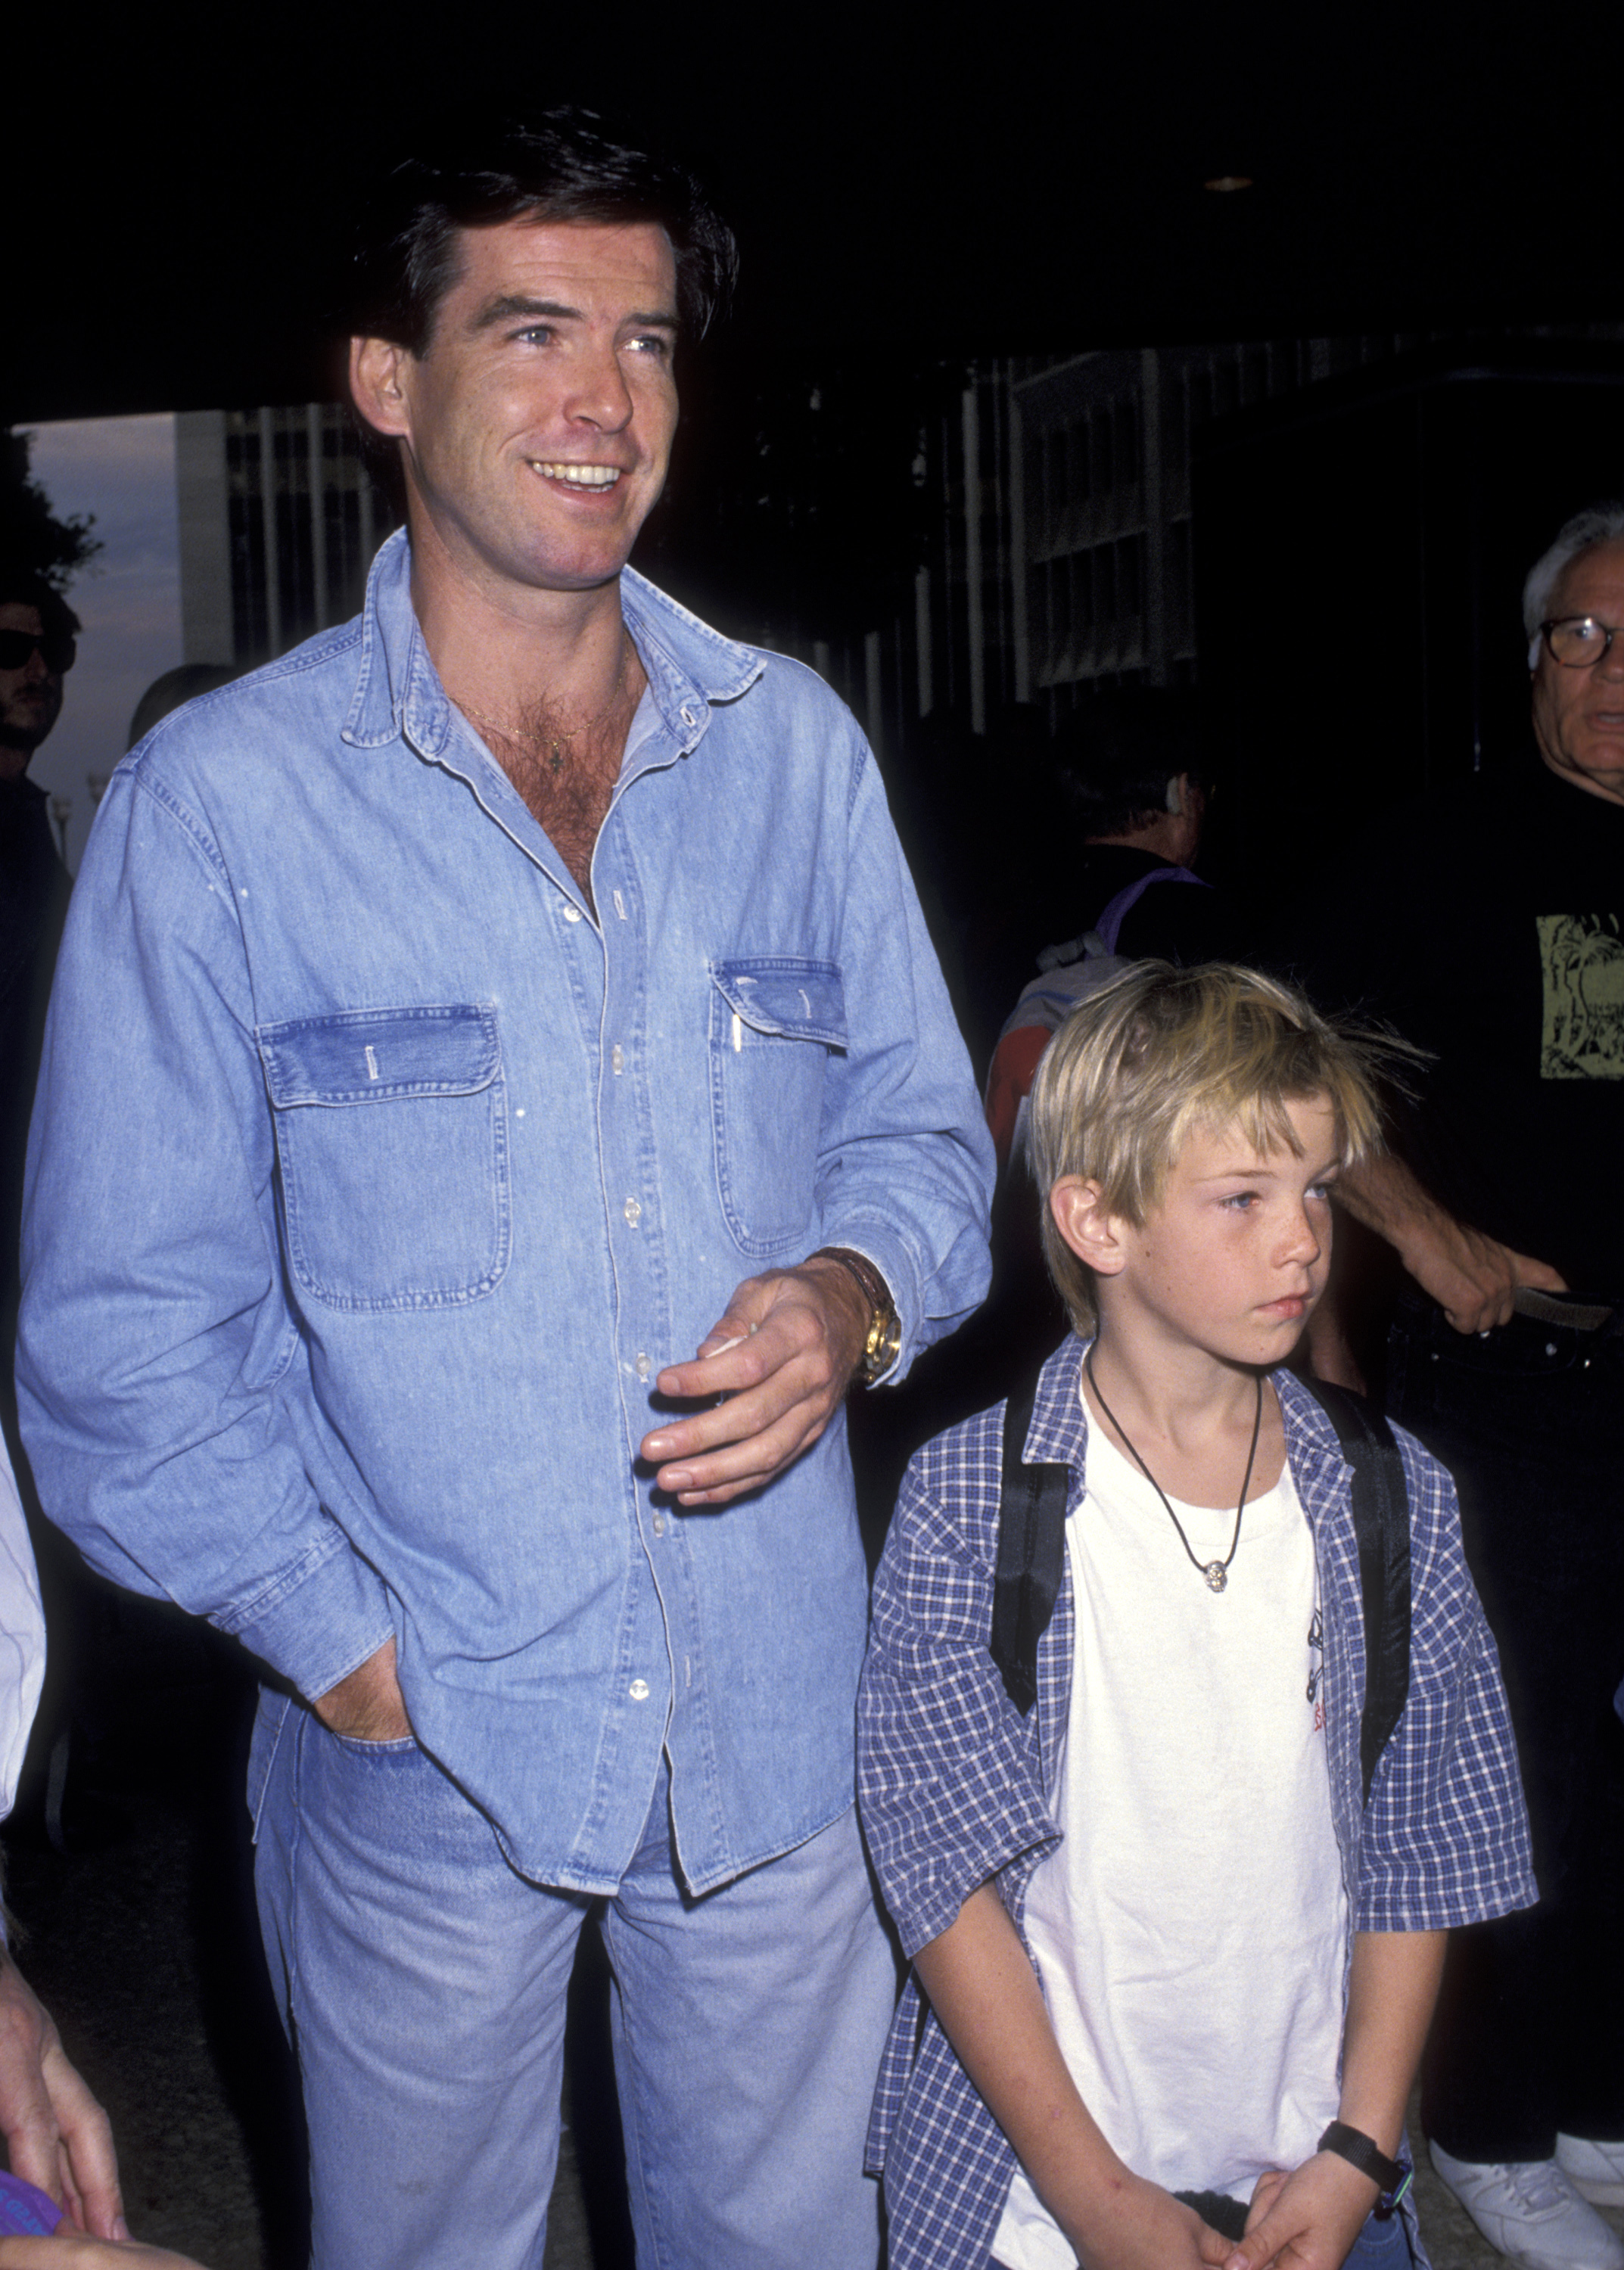 Sean und Pierce Brosnan bei der "Home Alone 2: Lost in New York" Premiere im Jahr 1992 | Quelle: Getty Images